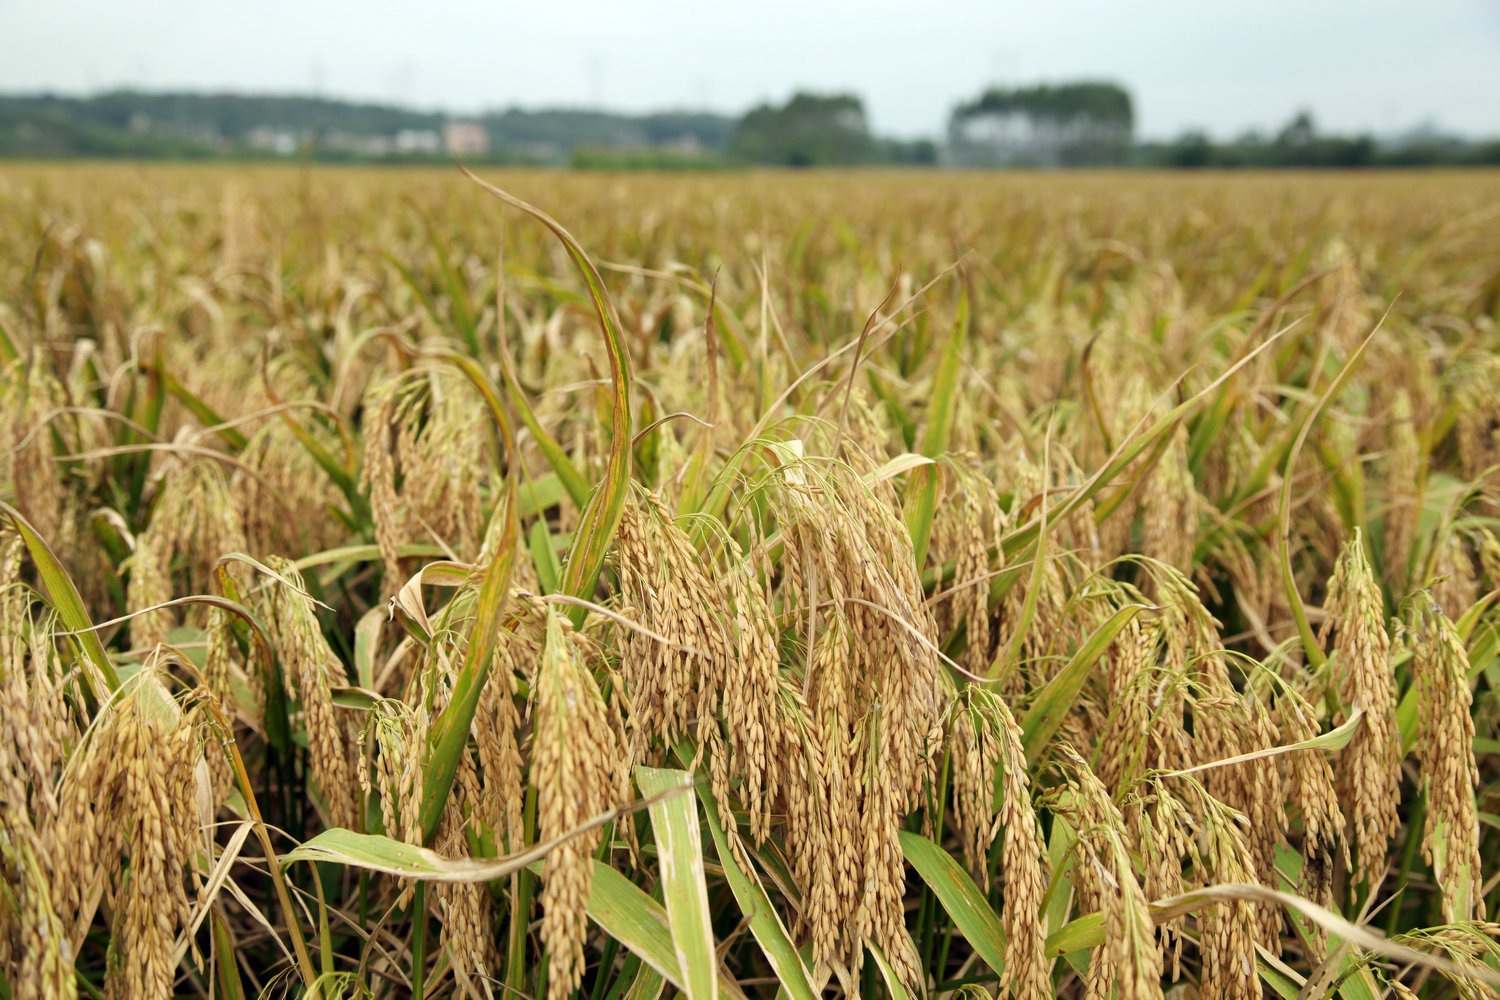 是由杂交水稻之父袁隆平院士指导培育的超级稻优质品种,2017年在